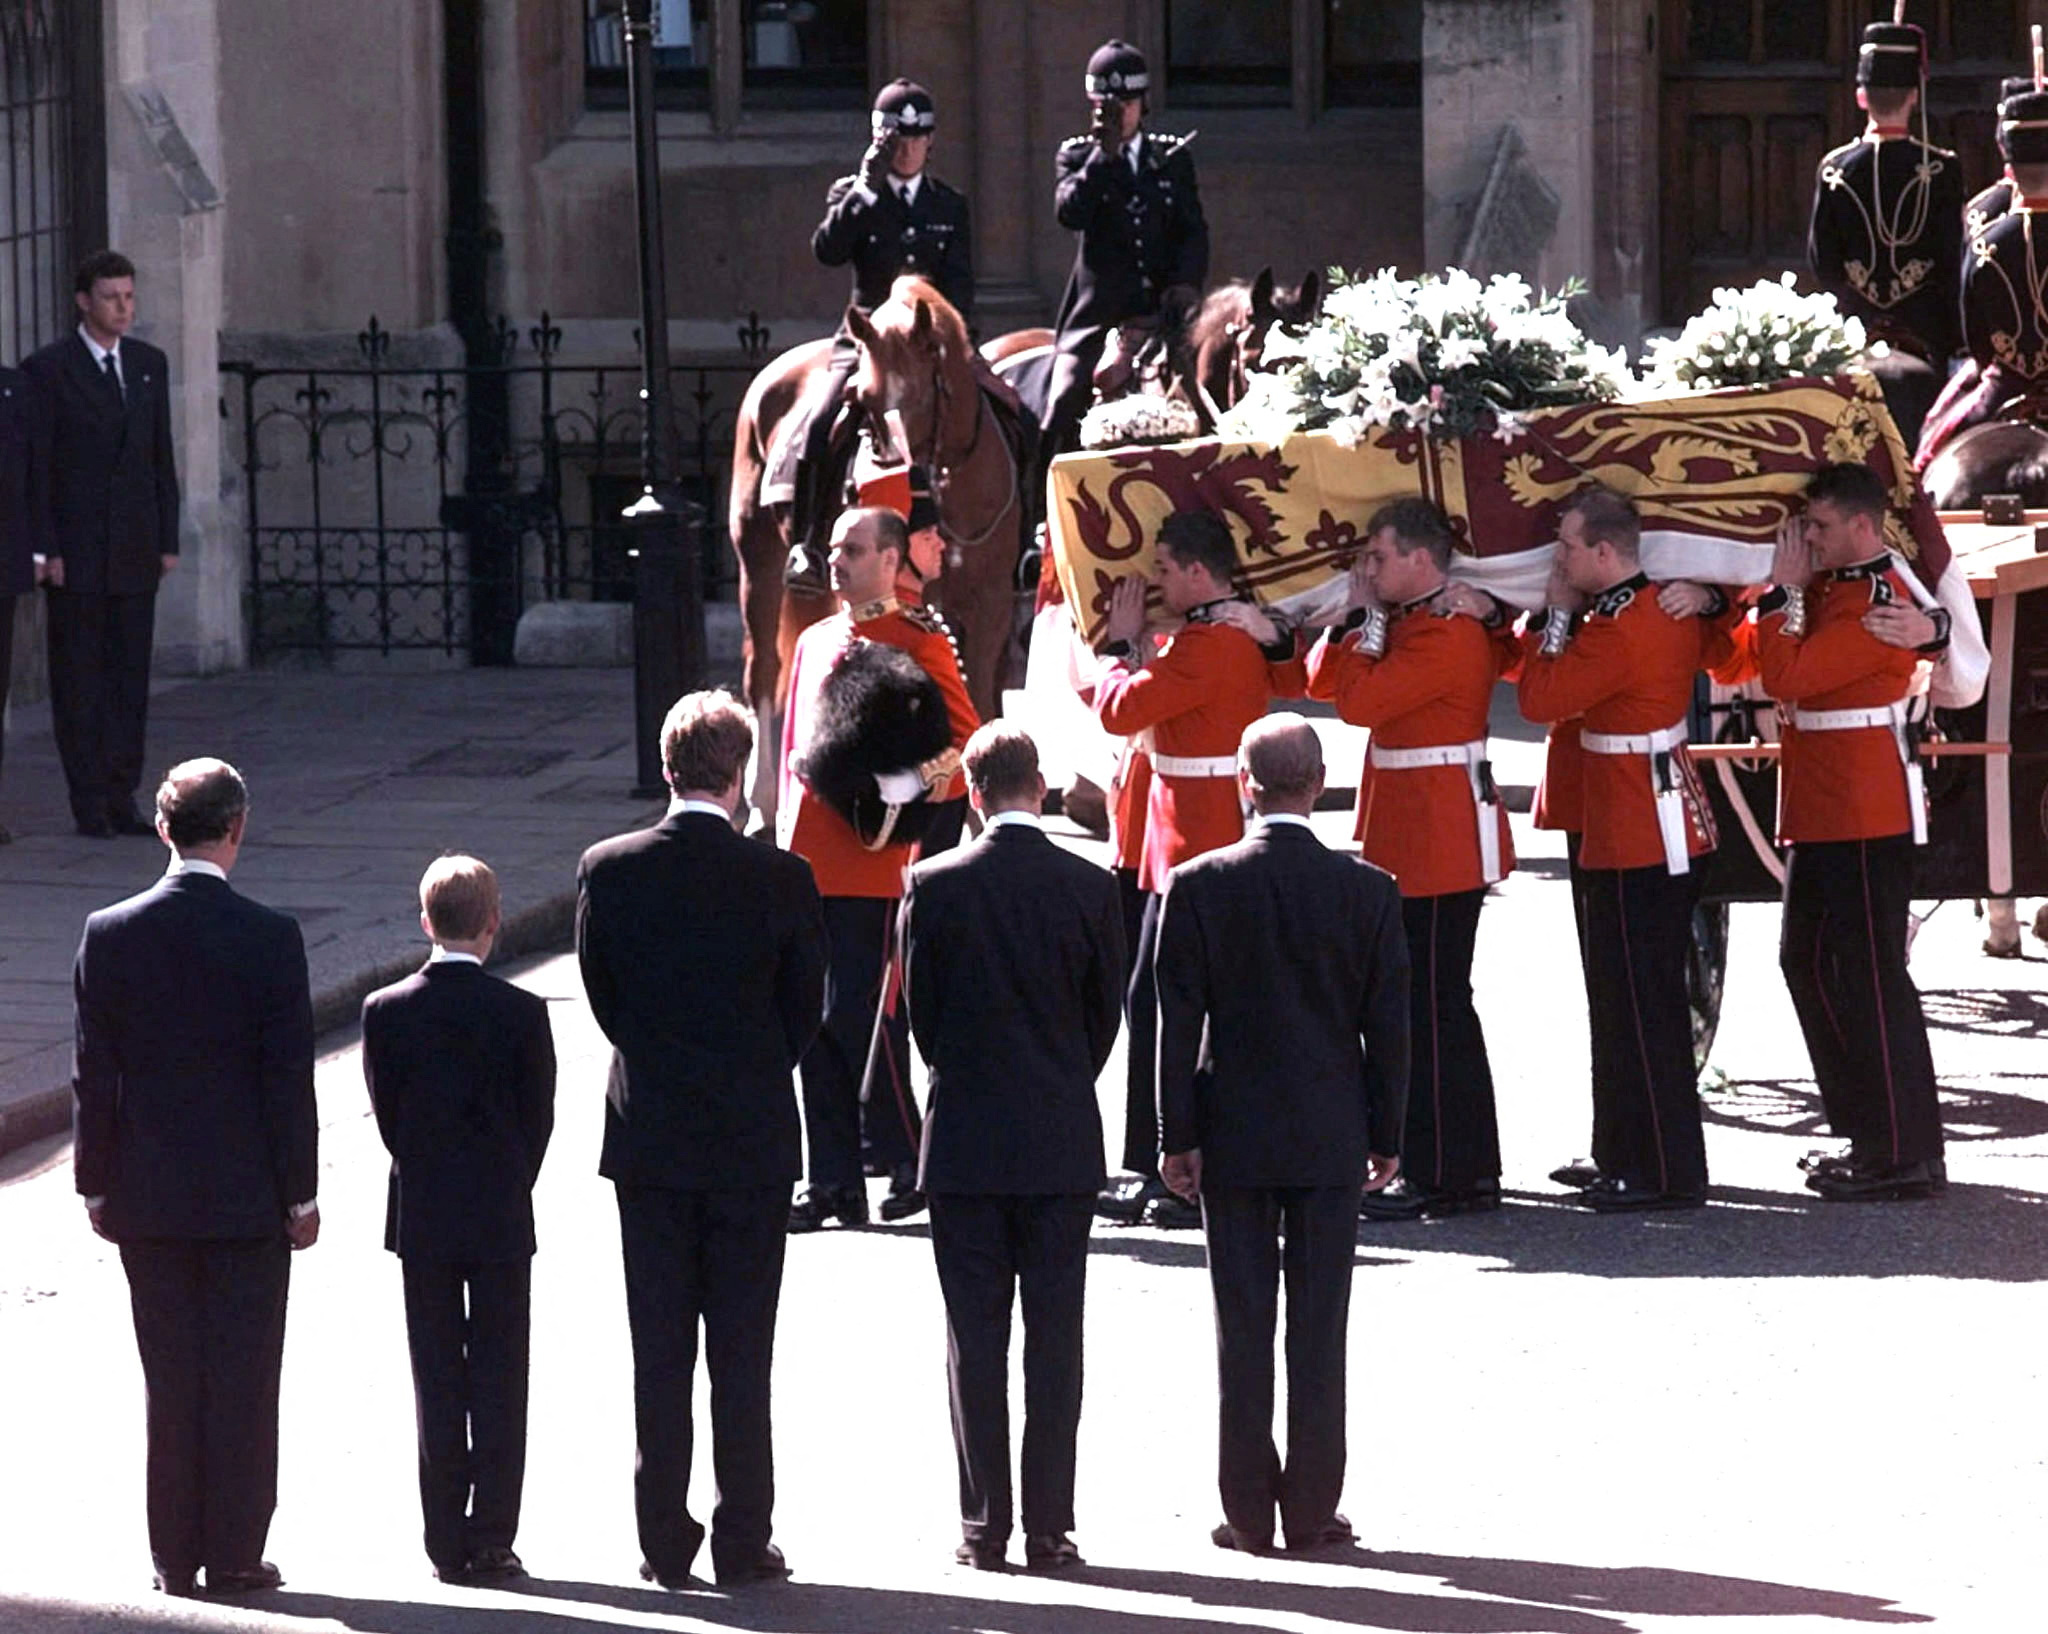 FOTO DE ARCHIVO: Carlos, Harry, el Conde Spencer, William y el Duque de Edimburgo observan el ataúd con el cuerpo de Diana, Princesa de Gales, siendo llevado a la Abadía de Westminster para su funeral en Londres, el 6 de septiembre de 1997 (Reuters)